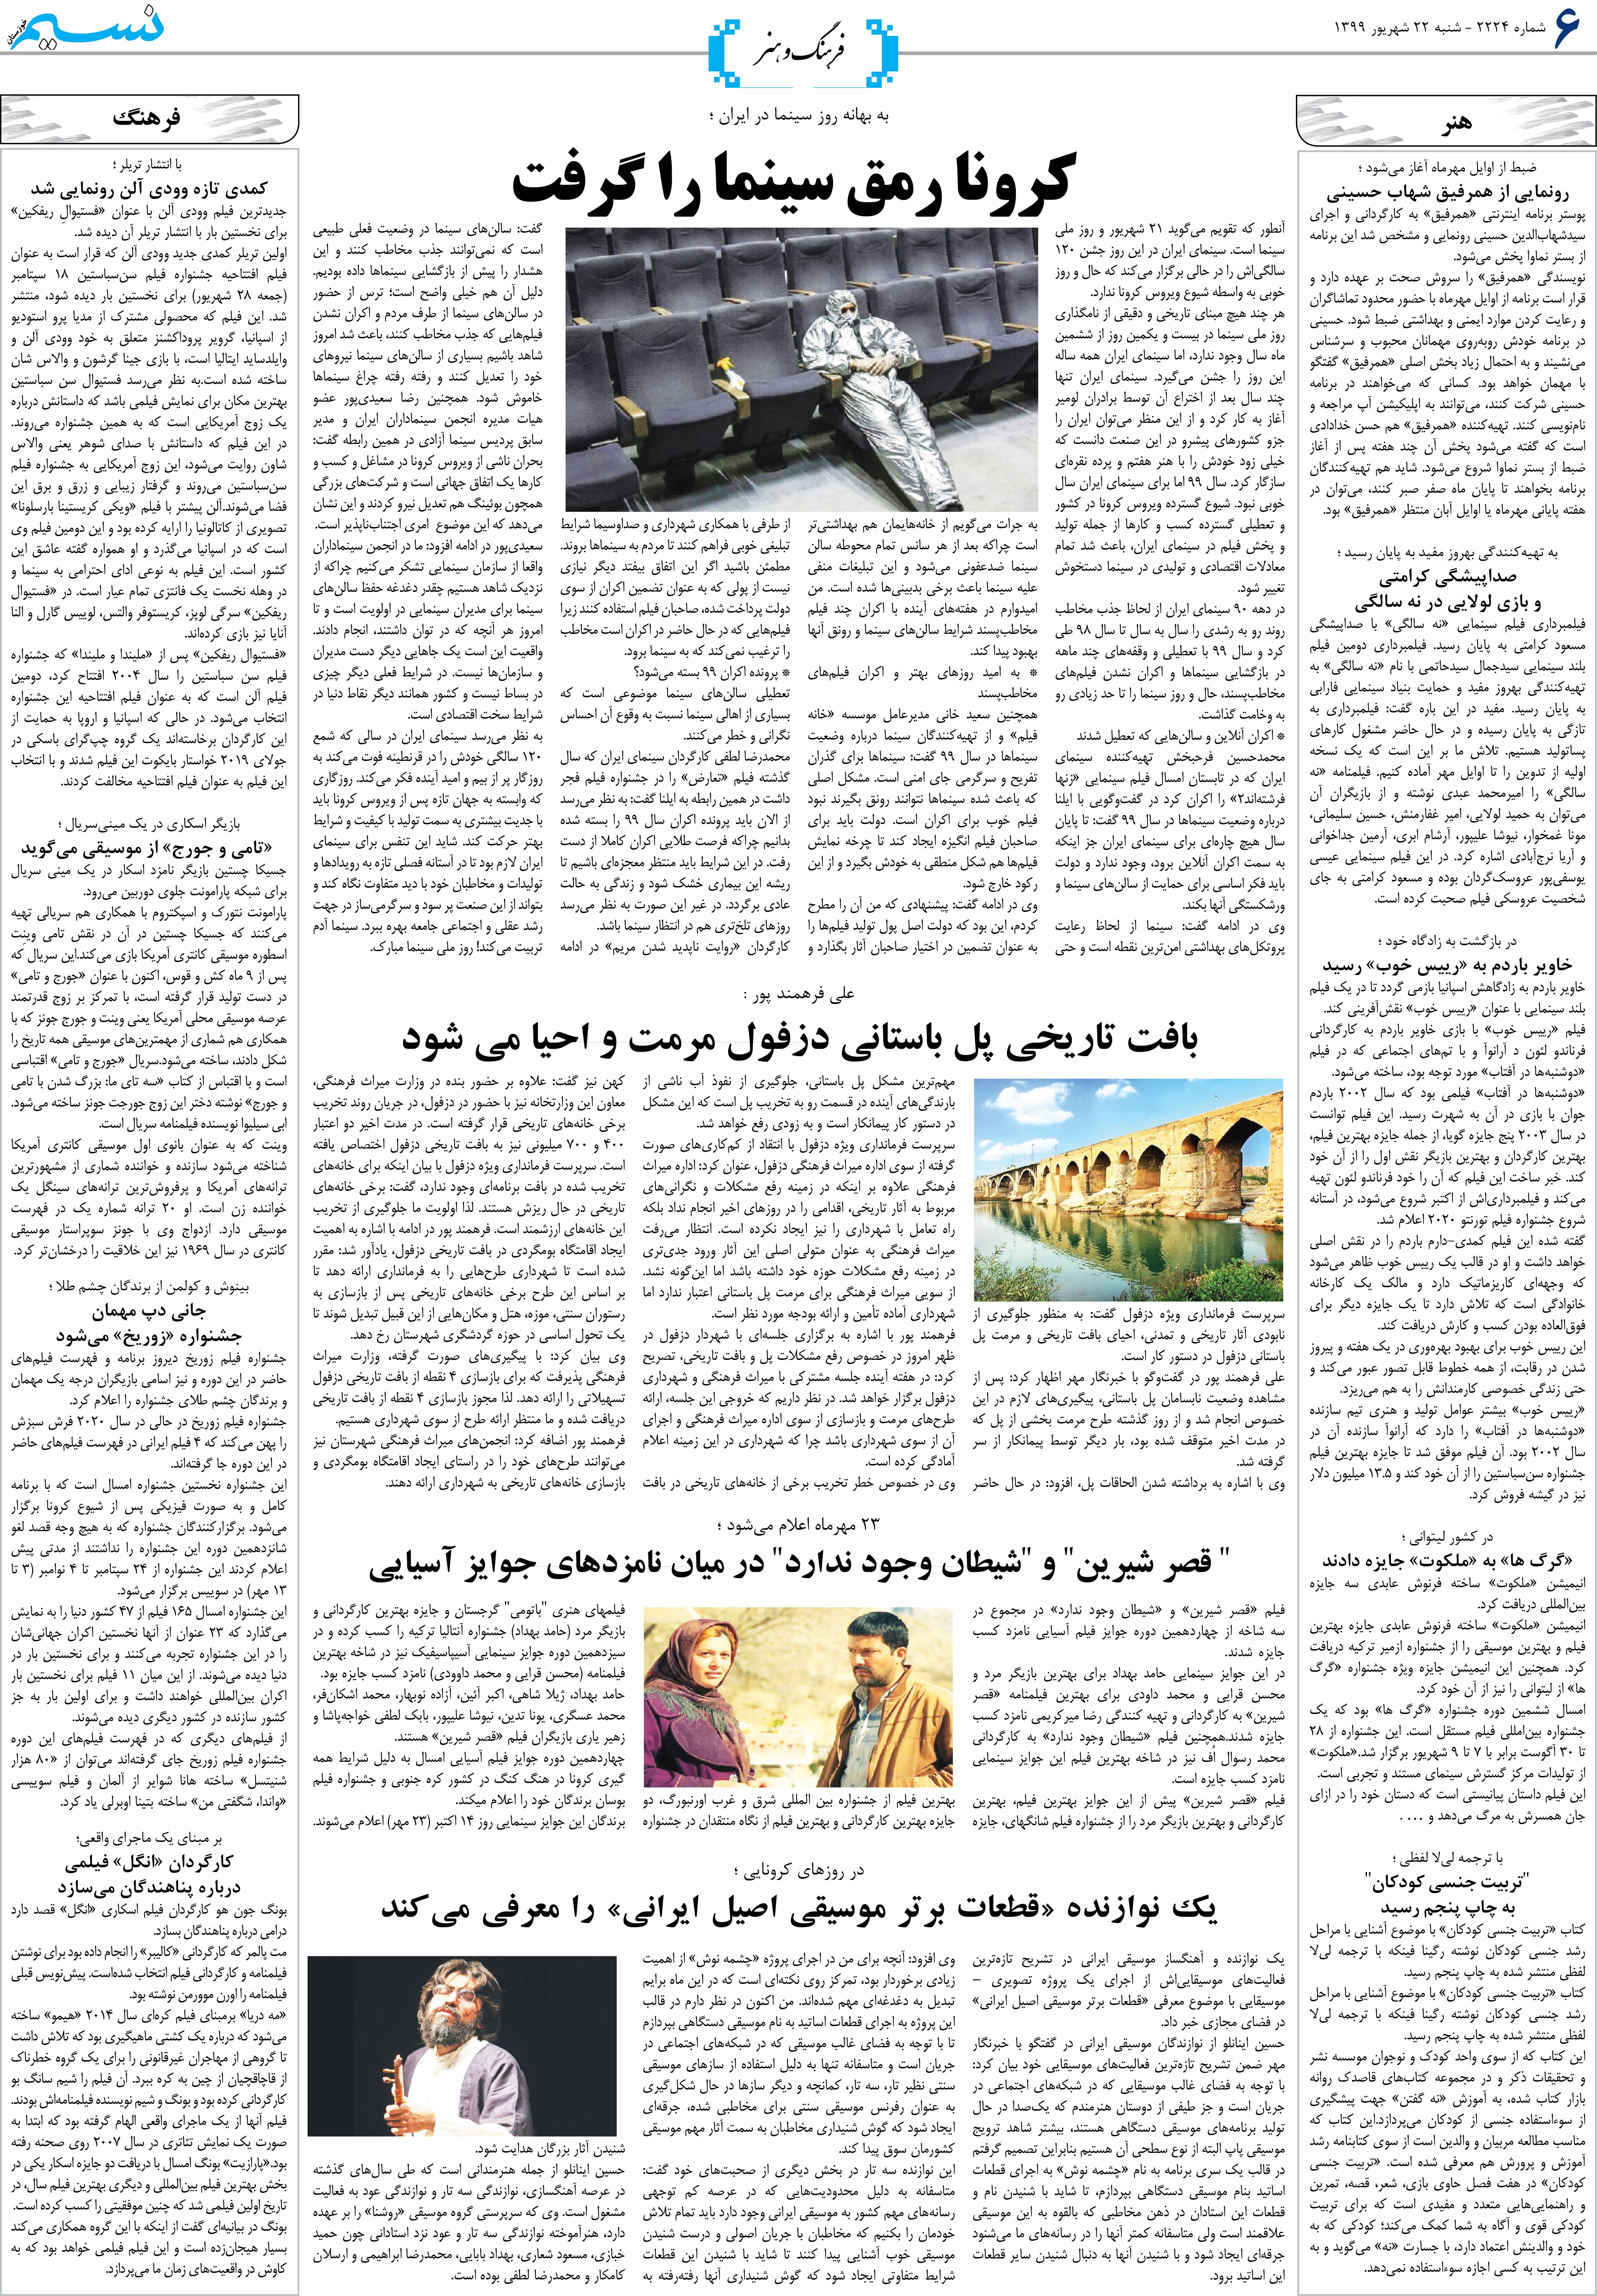 صفحه فرهنگ و هنر روزنامه نسیم شماره 2224